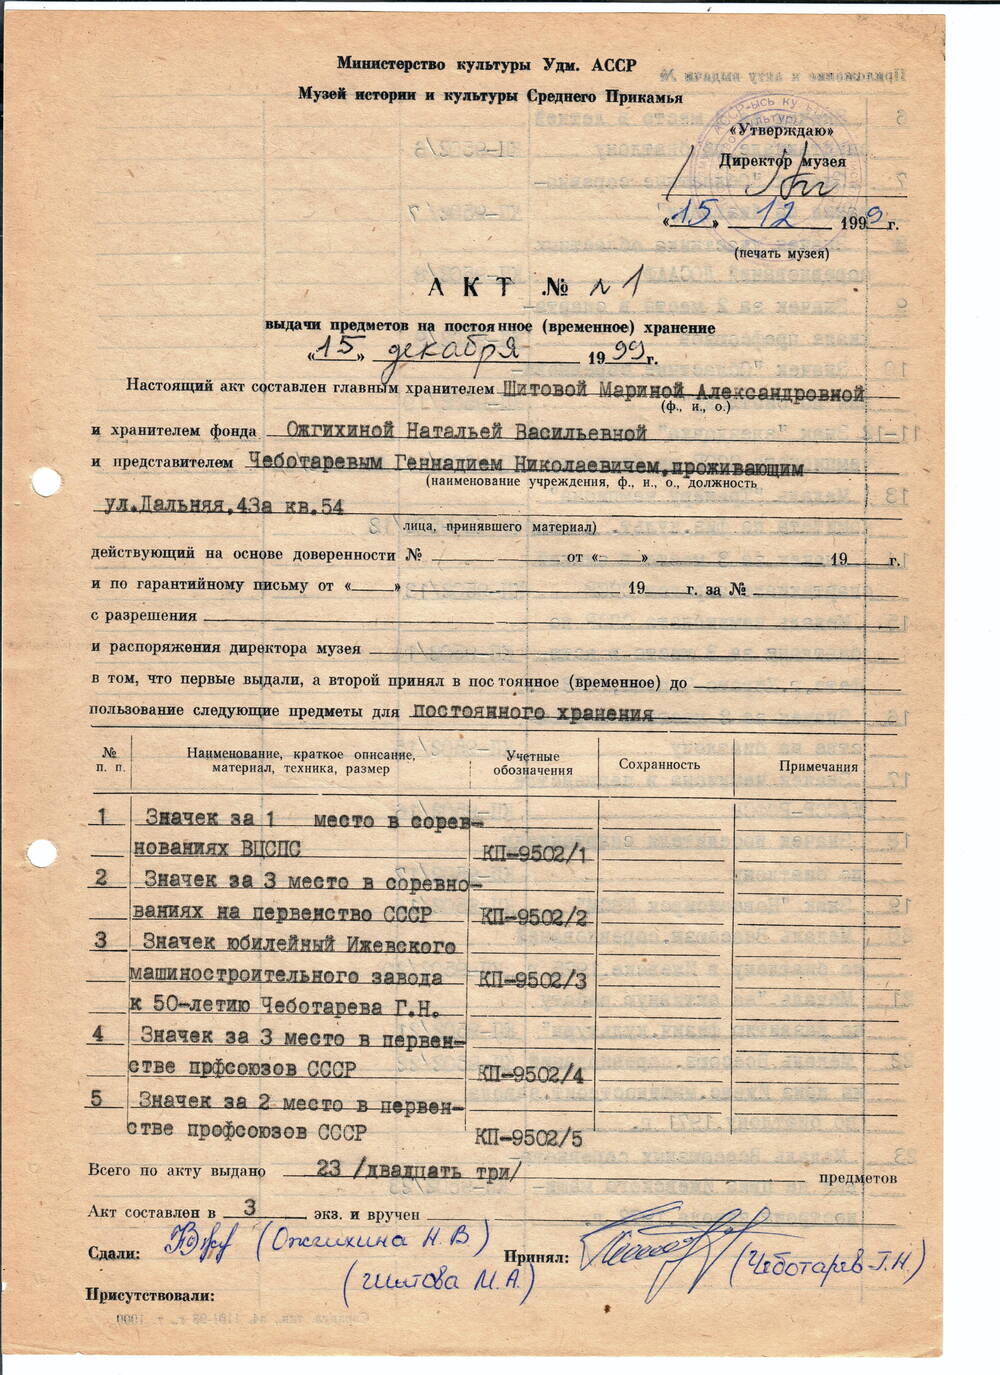 Значок за III место в соревнованиях на первенства СССР Чеботарева Г.Н., (прямоугольная колодка обтянута зеленой тканью).